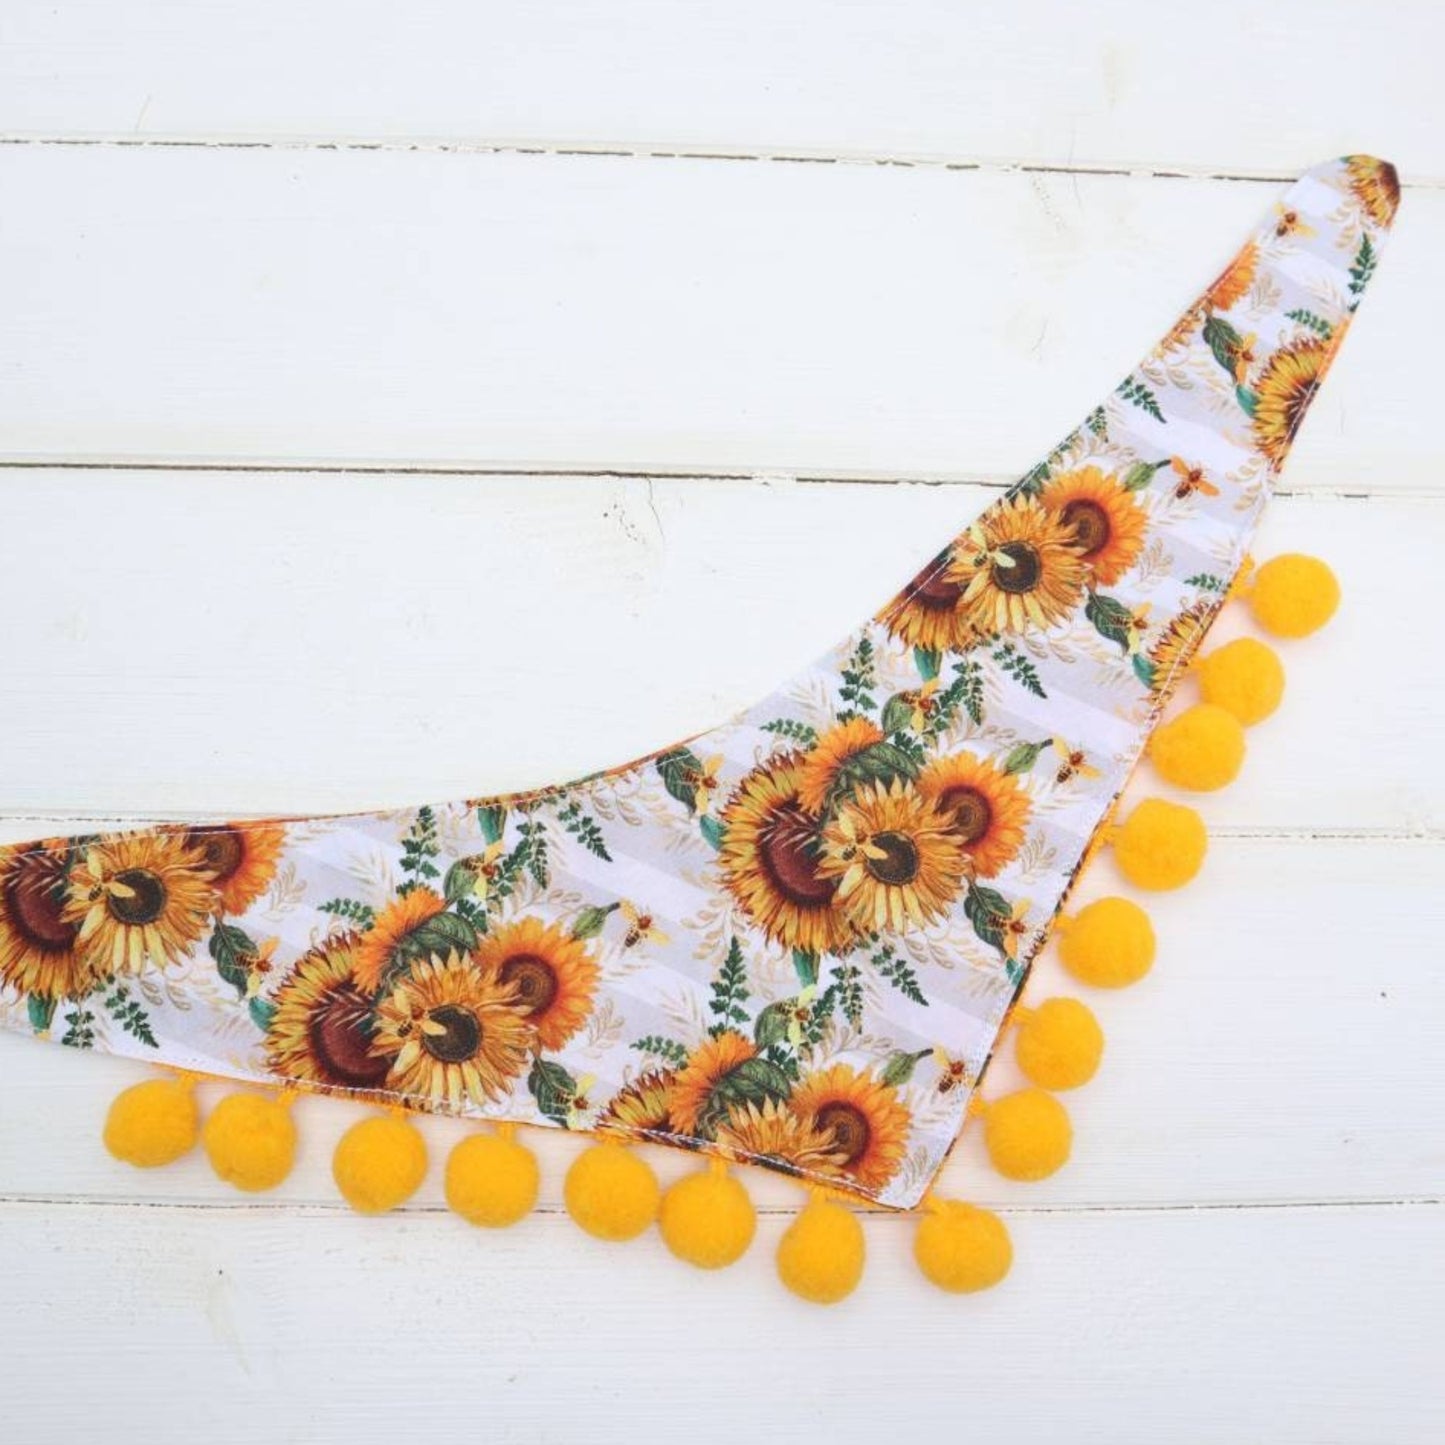 Dog Bandana Sunflower Yellow Floral Fabric with Pom Pom Trim Dog Birthday Gift Tie on Bandana